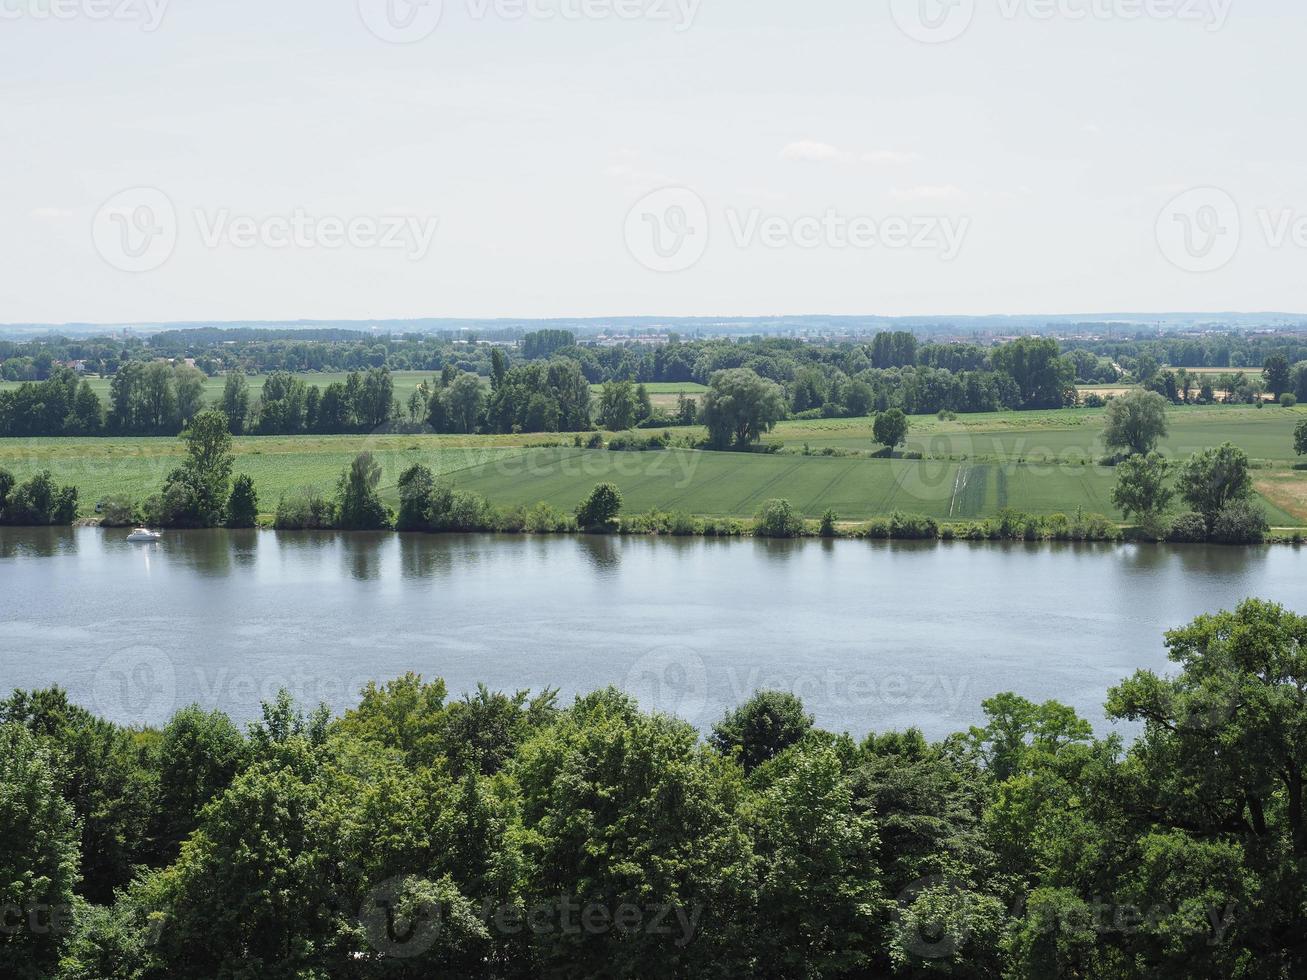 uitzicht op de rivier de Donau in donaustauf foto